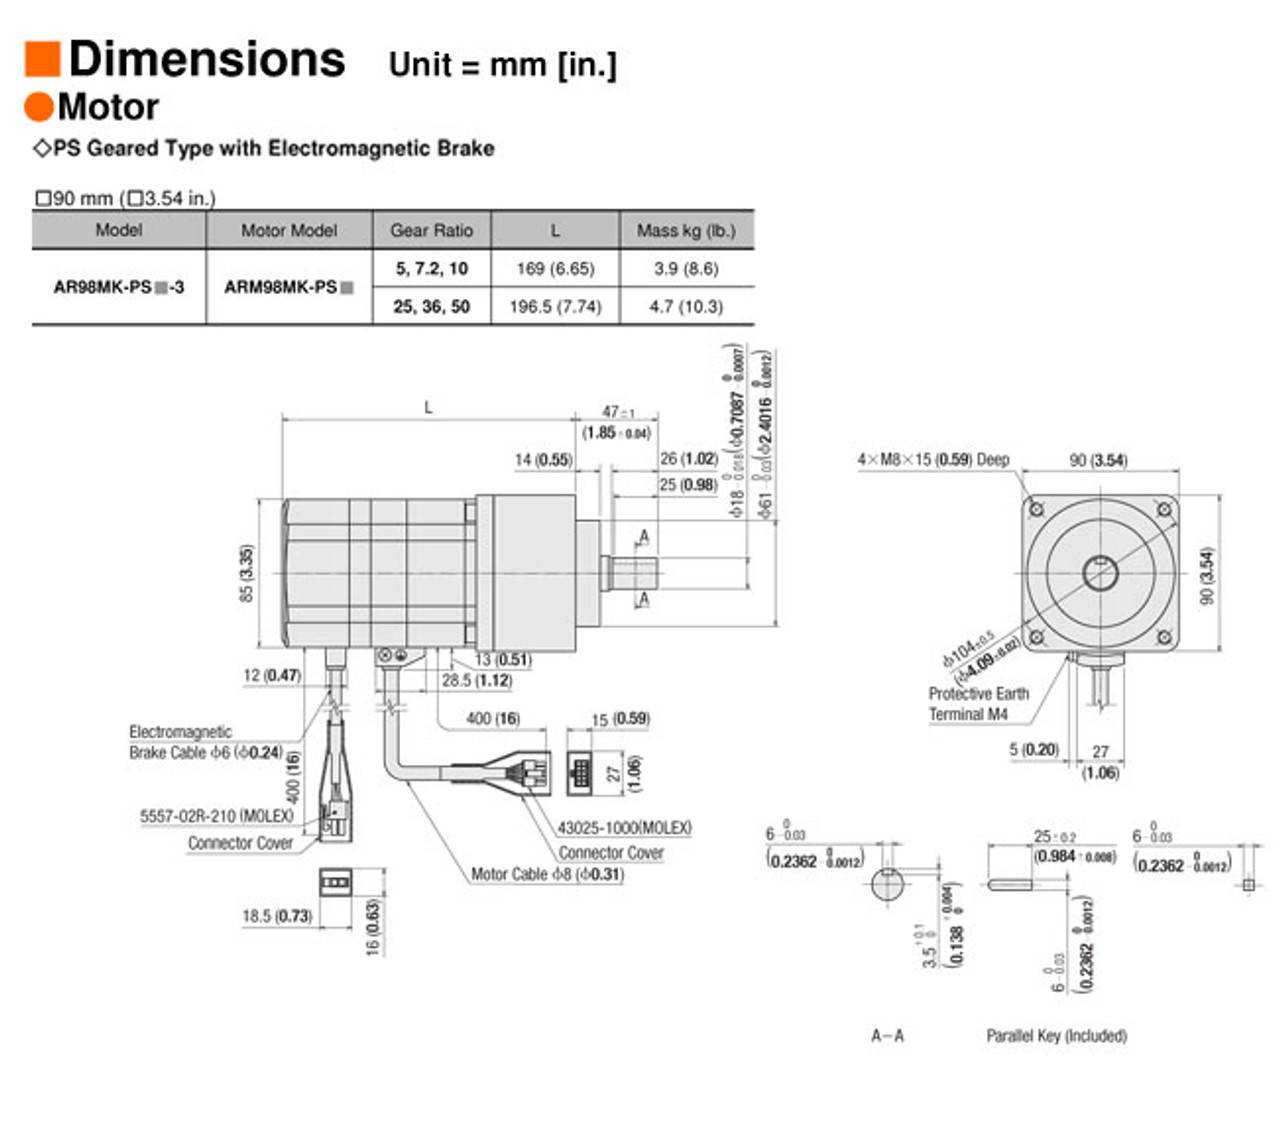 AR98MK-PS25-3 - Dimensions